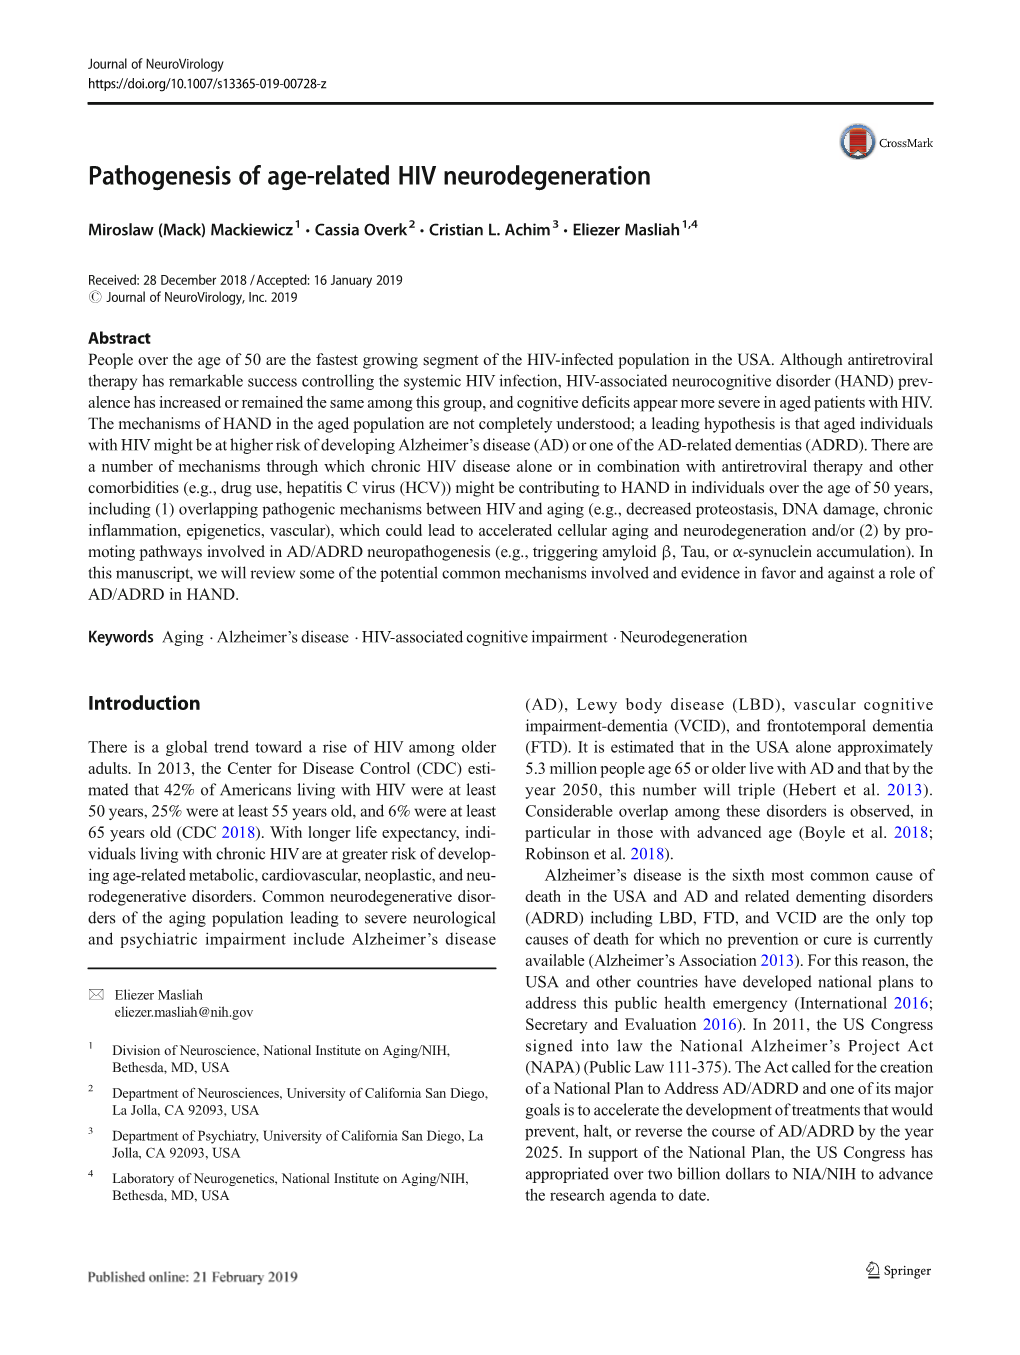 Pathogenesis of Age-Related HIV Neurodegeneration